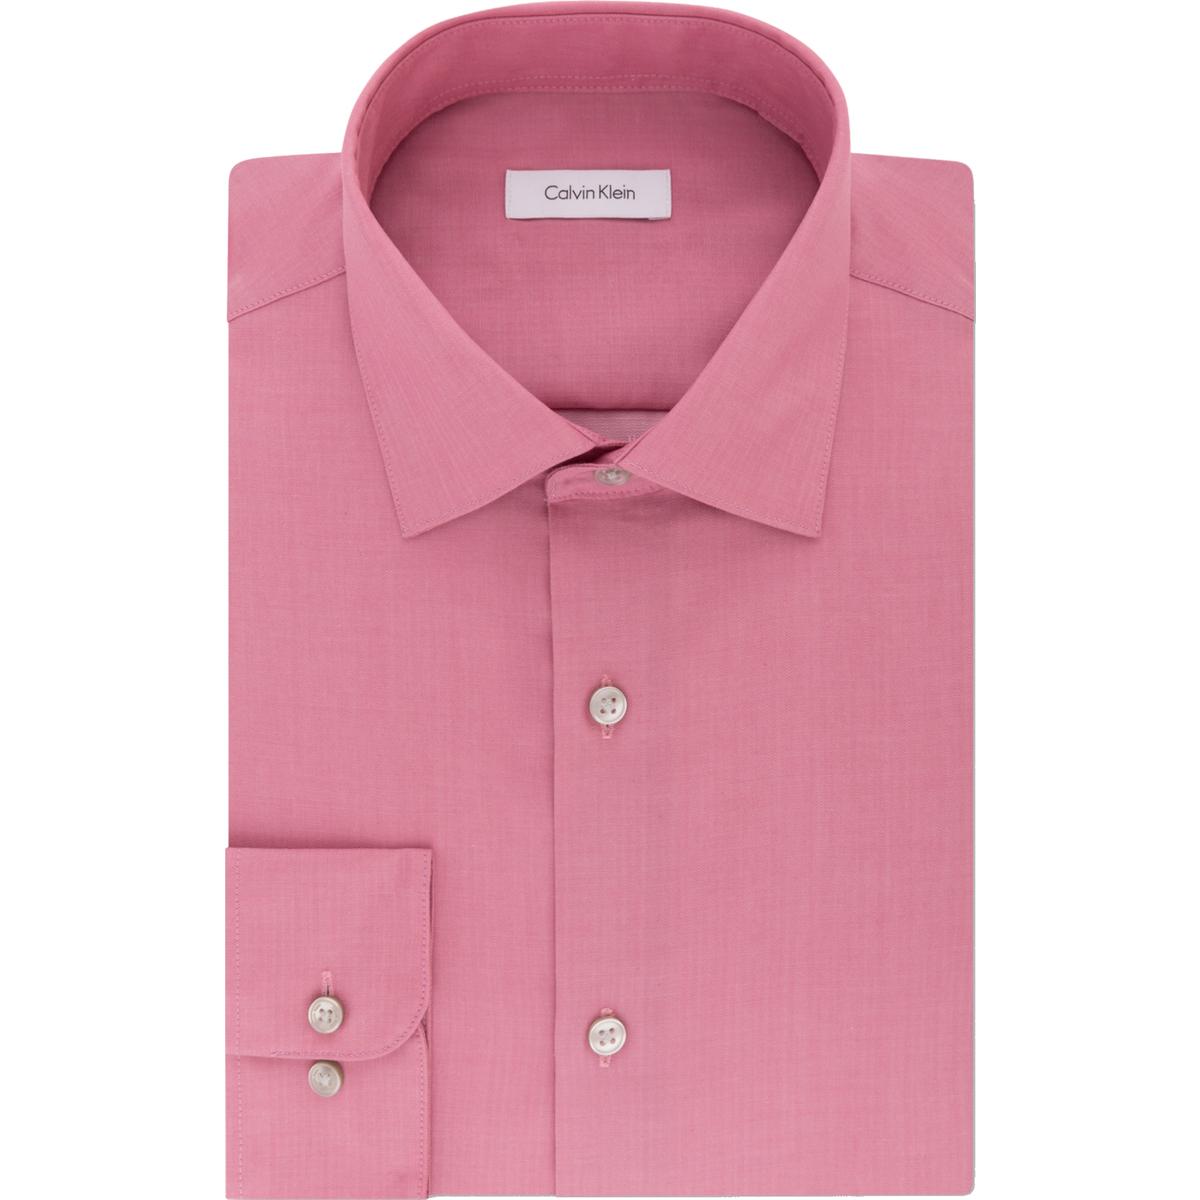 Calvin Klein Mens Pink Cotton Dress Shirt Big & Tall 20 37/38 XXXXL ...